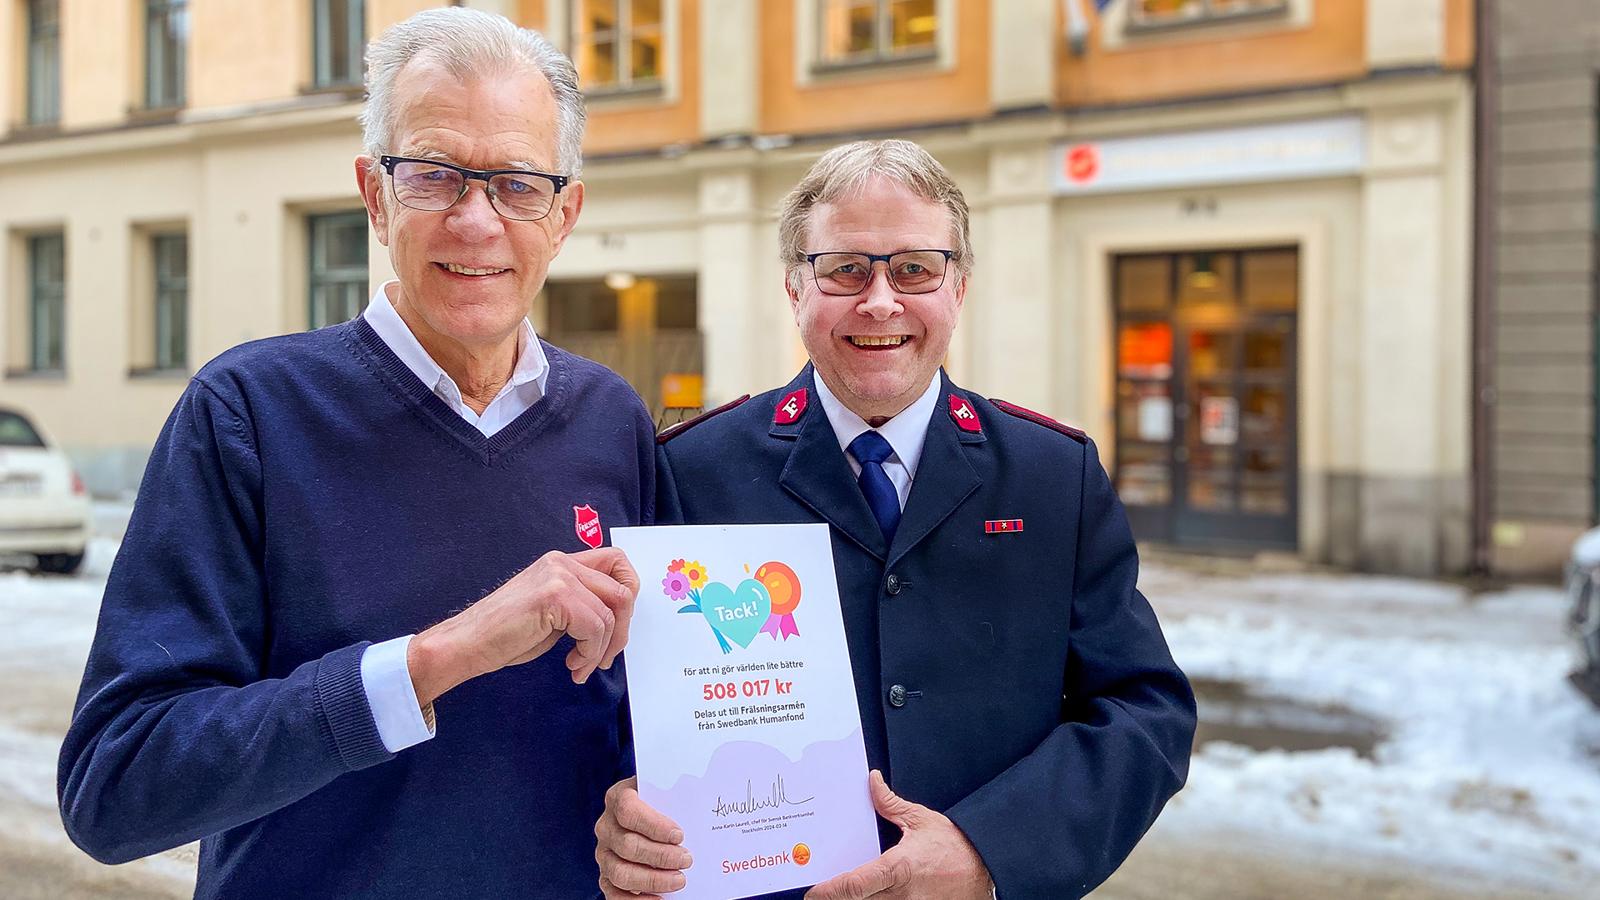 Lars Beijer och Per-Uno Åslund står utanför Frälsningsarméns högkvarter och håller i diplomet från Swedbank Robur Humanfond.